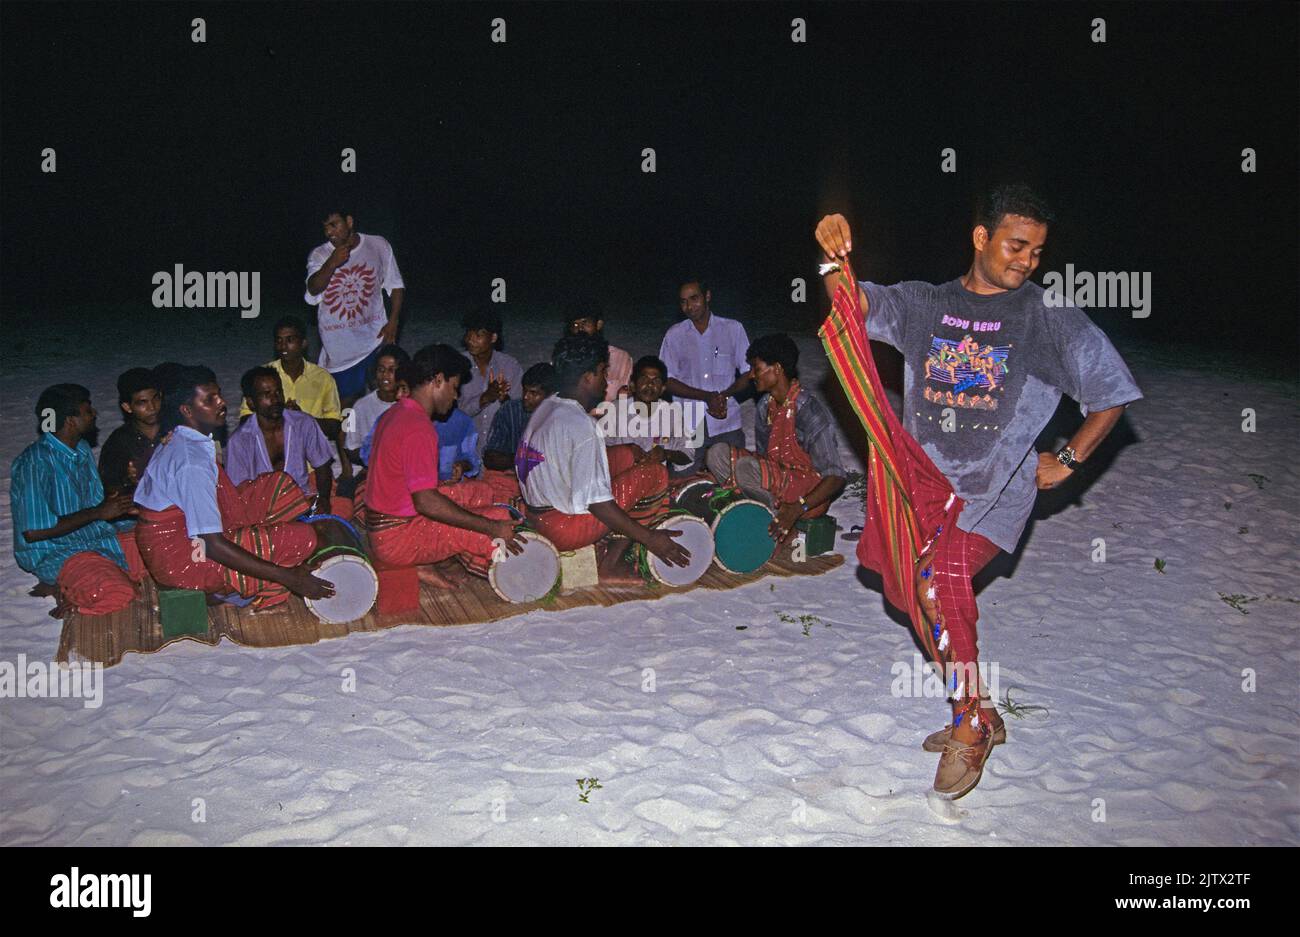 Hombres maldivos tocando Bodu Beru, canto y baile tradicional, Mahembadhoo isla de origen, Maldivas, Océano Índico, Asia Foto de stock